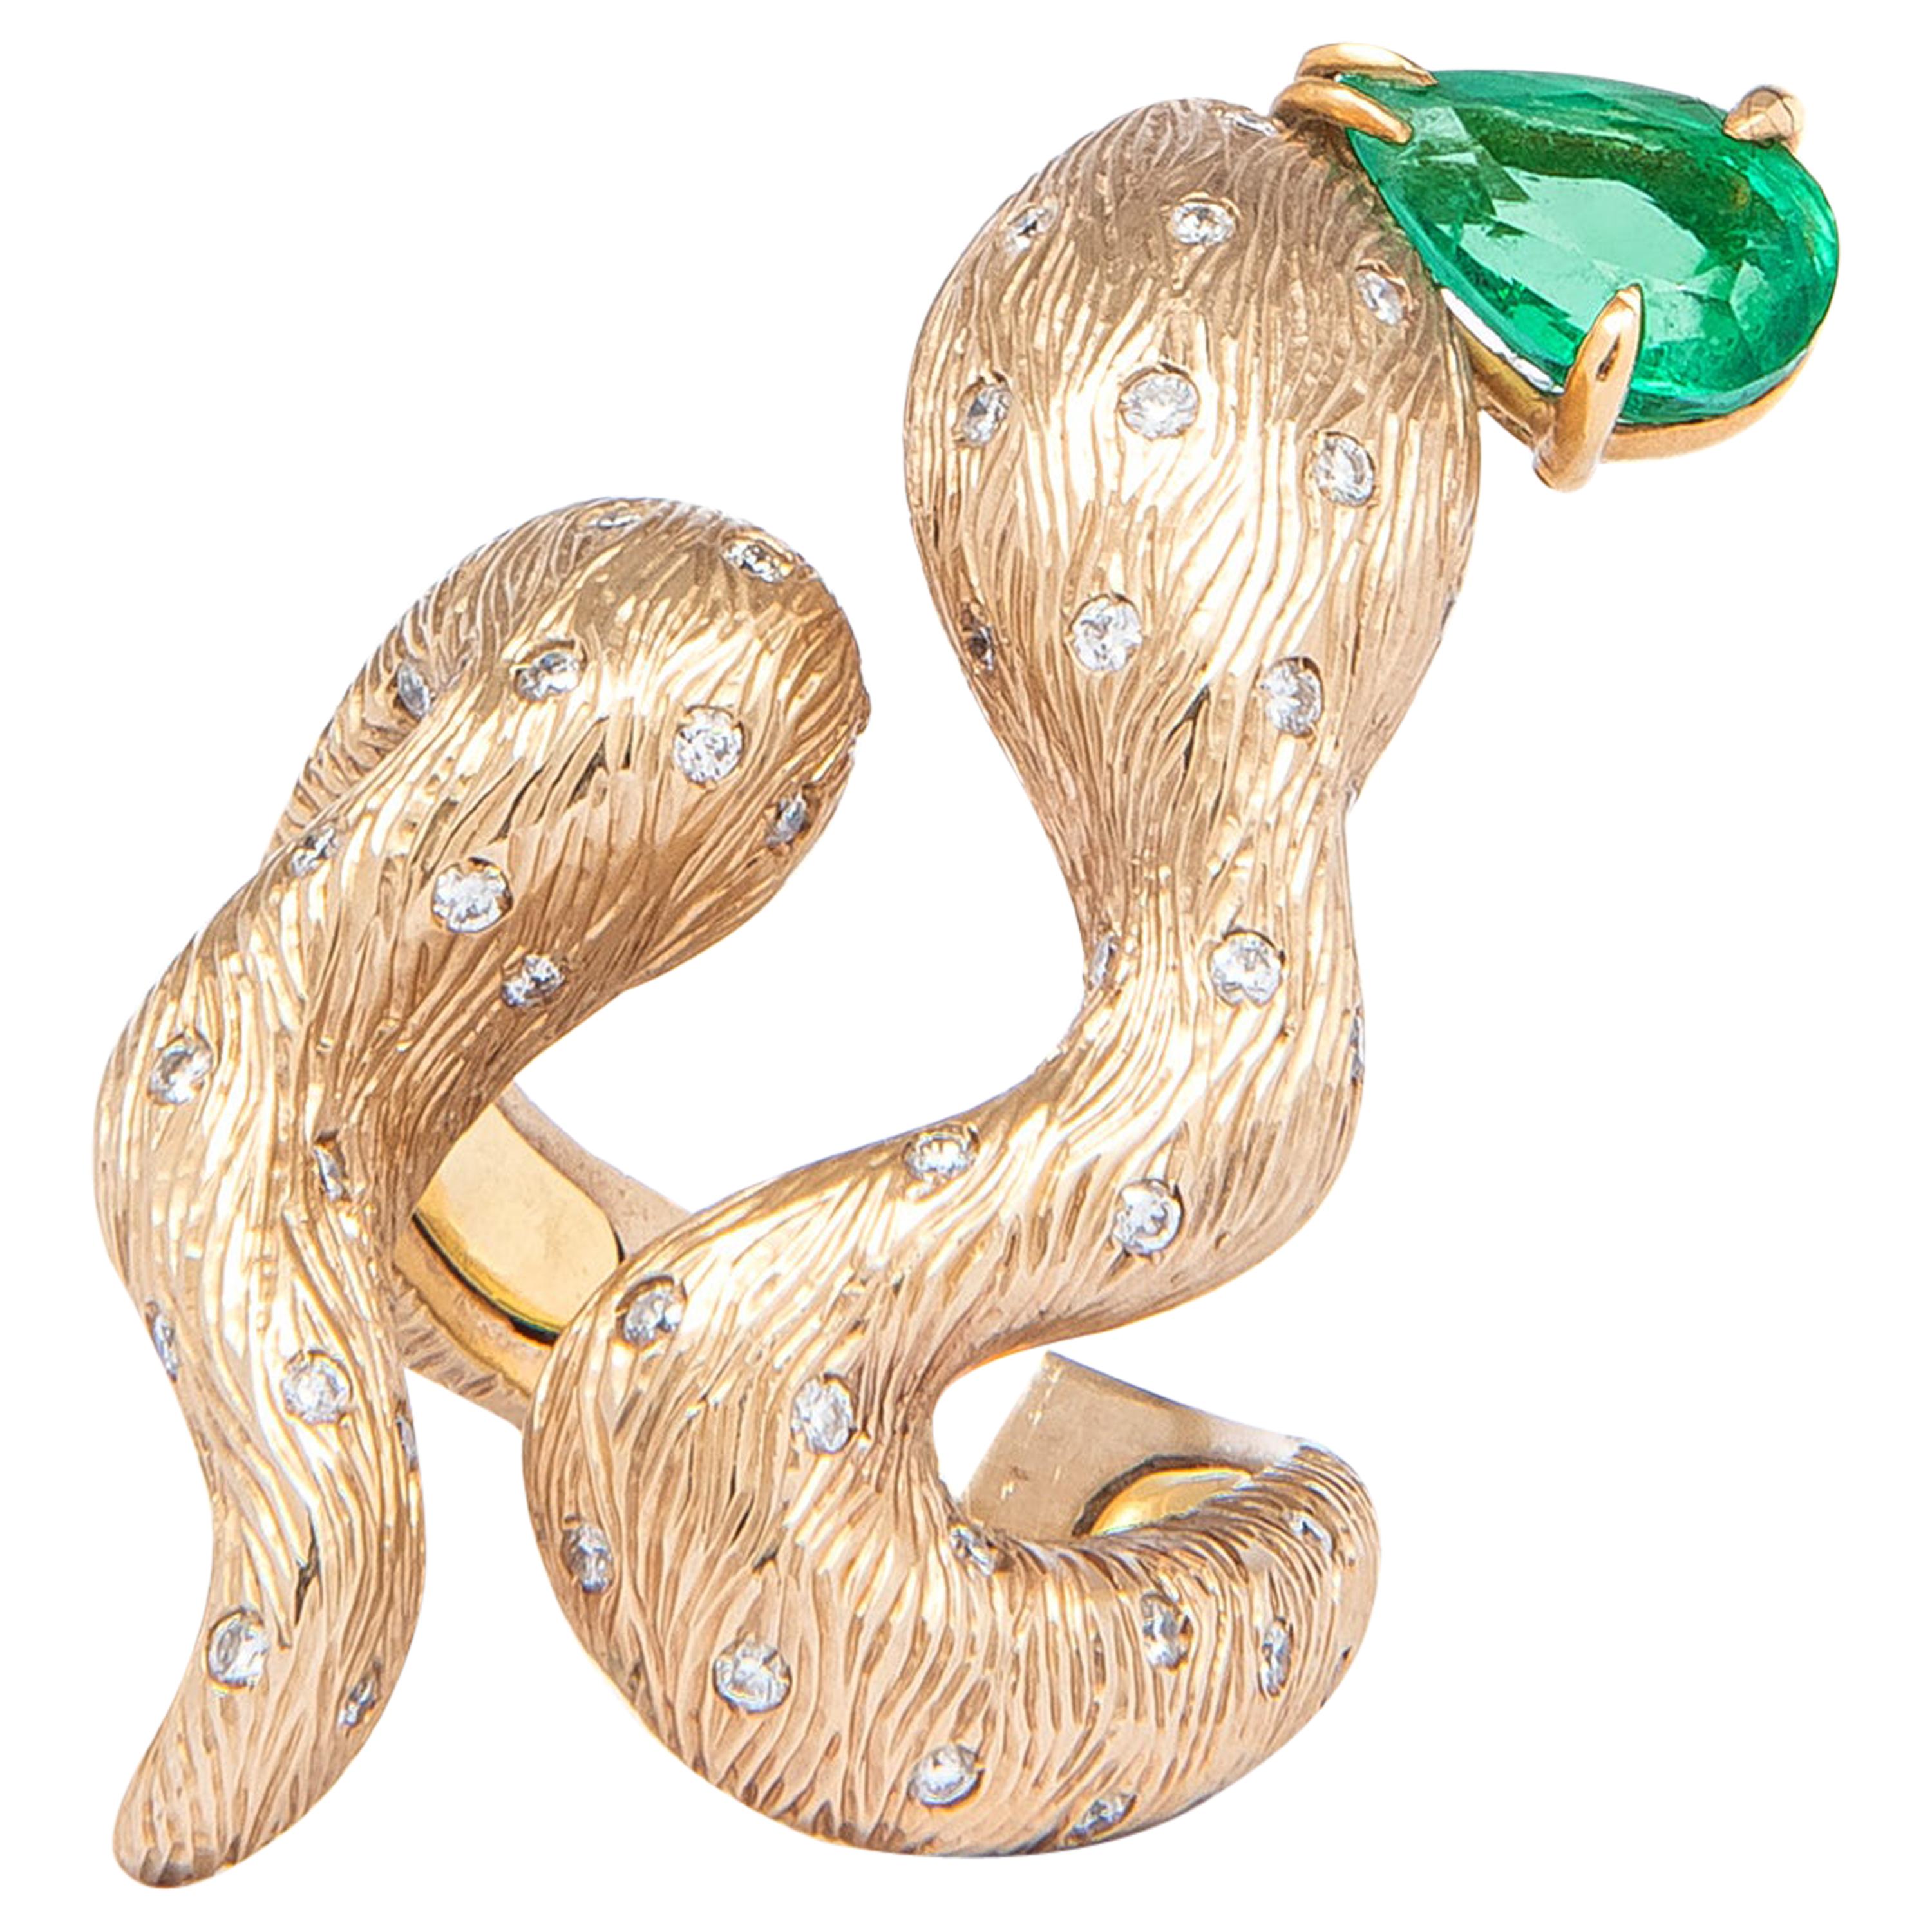 Regina Gambatesa Diamonds and Emerald Snake Ring